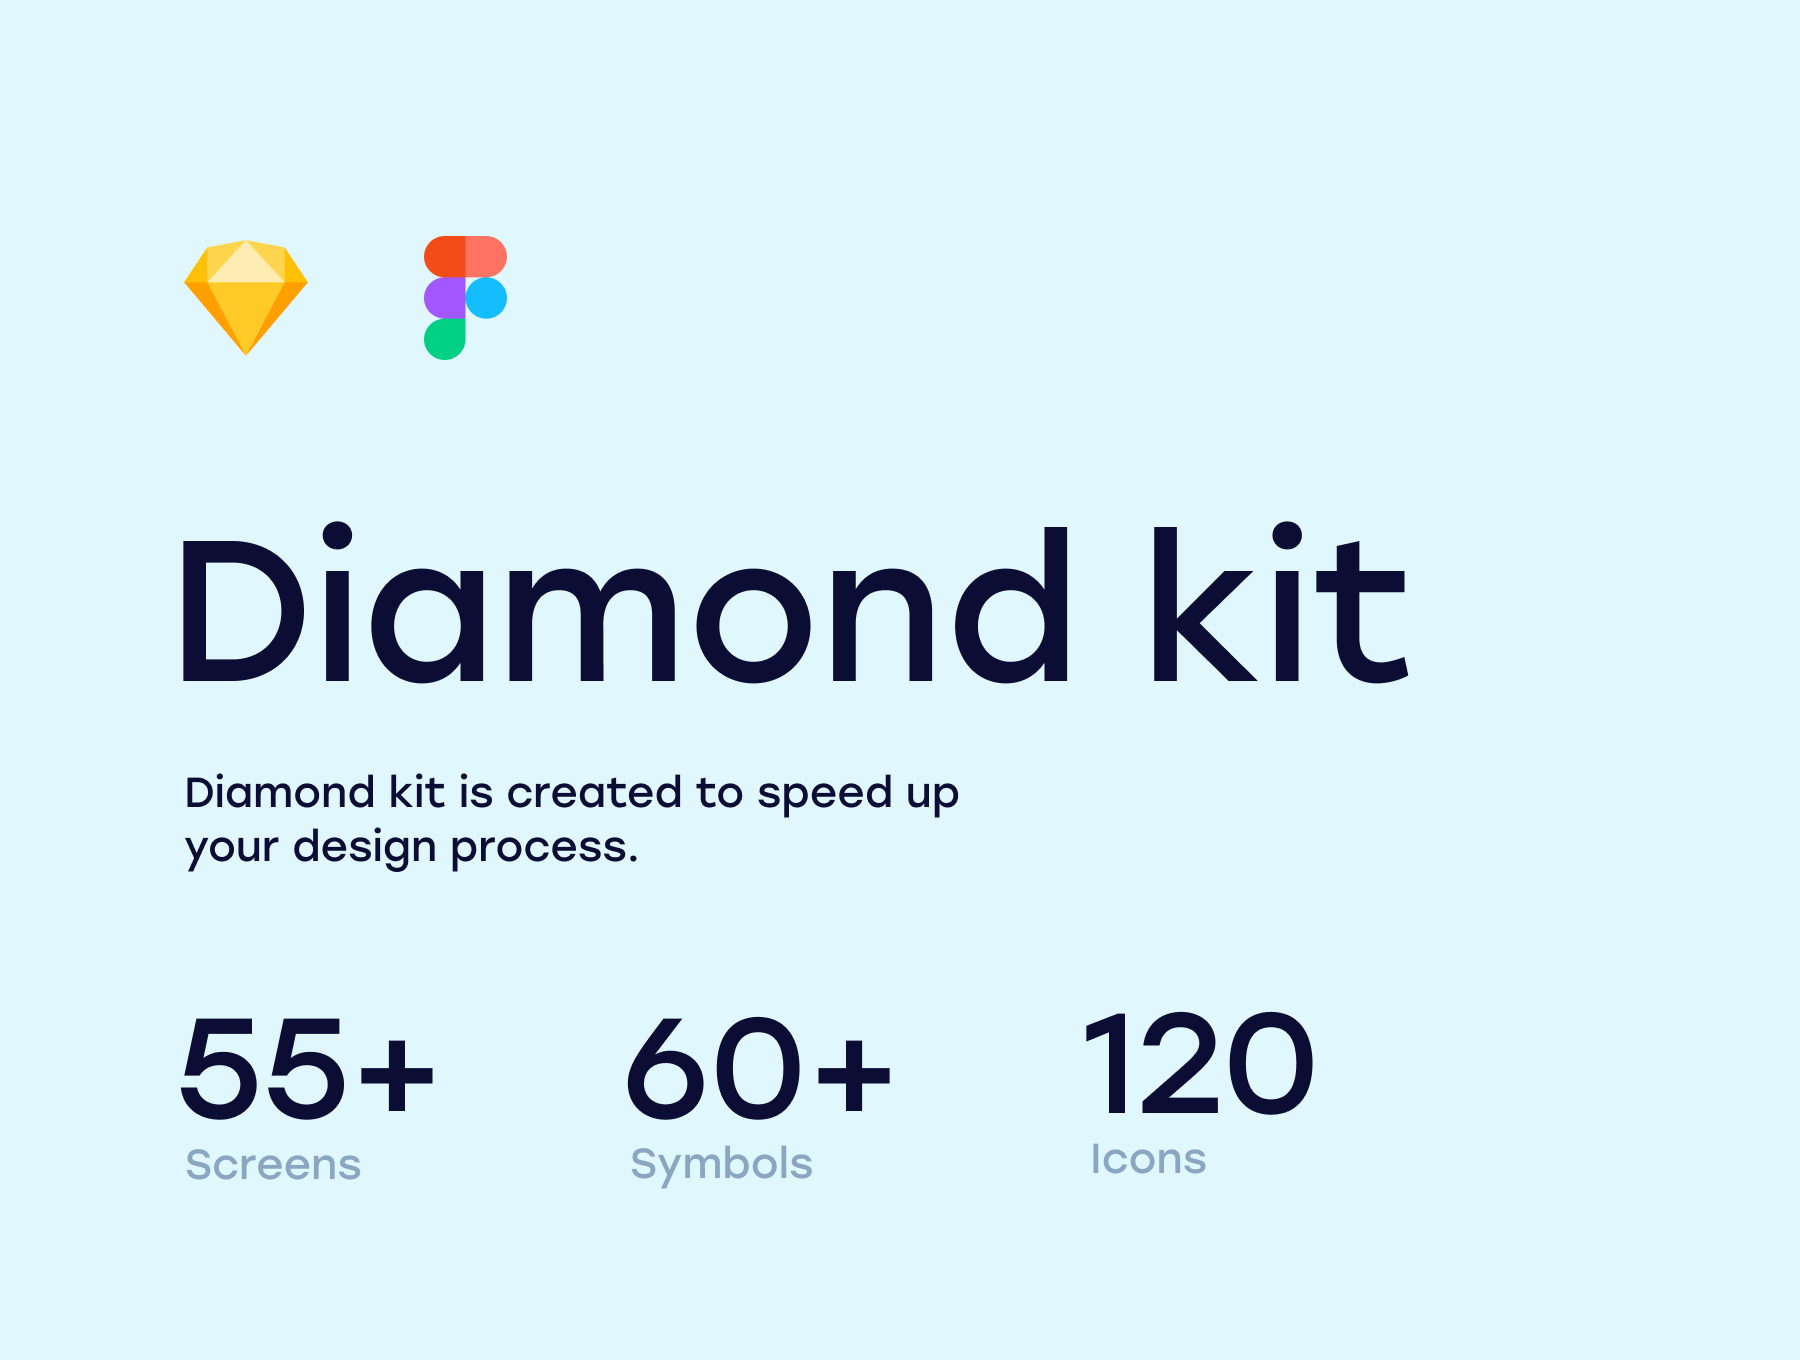 دانلود کیت رابط کاربری Diamond kit 2.0 برای فیگما و اسکچ